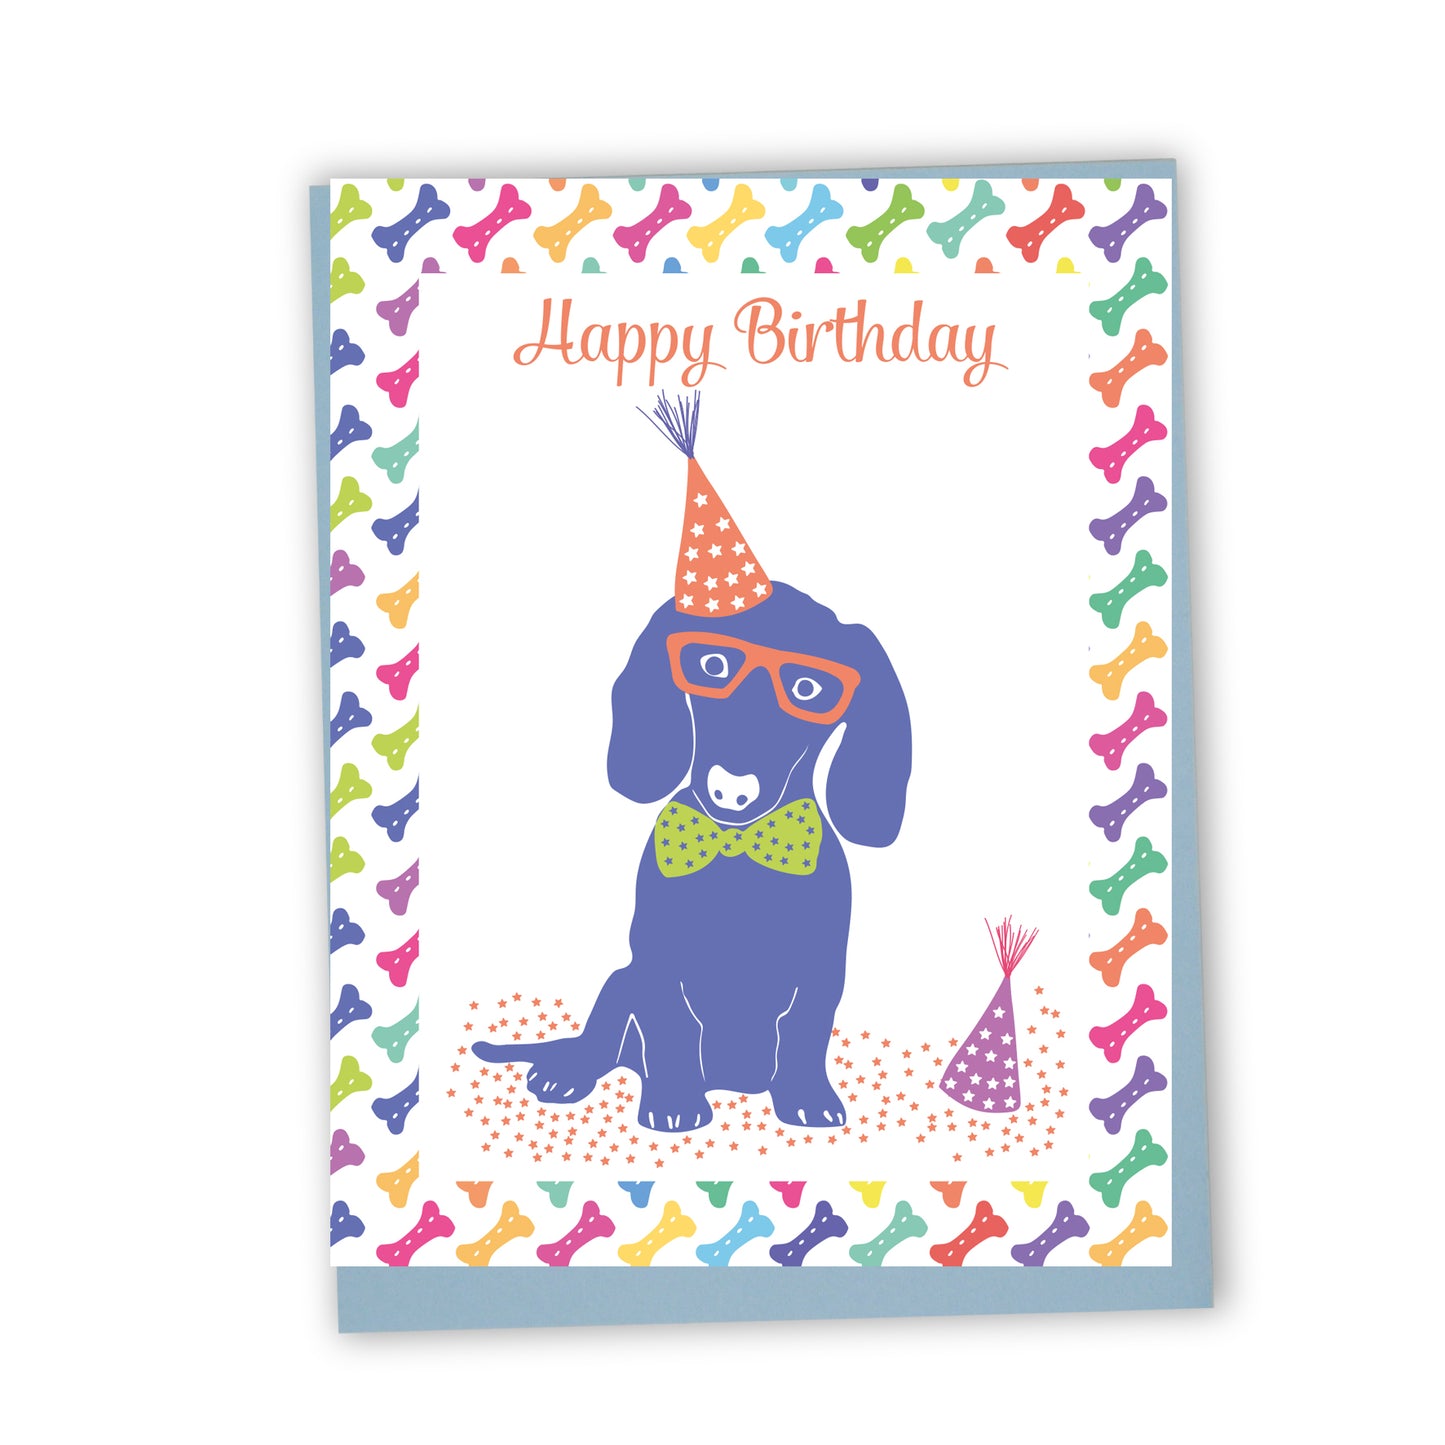 Happy birthday - Superdog